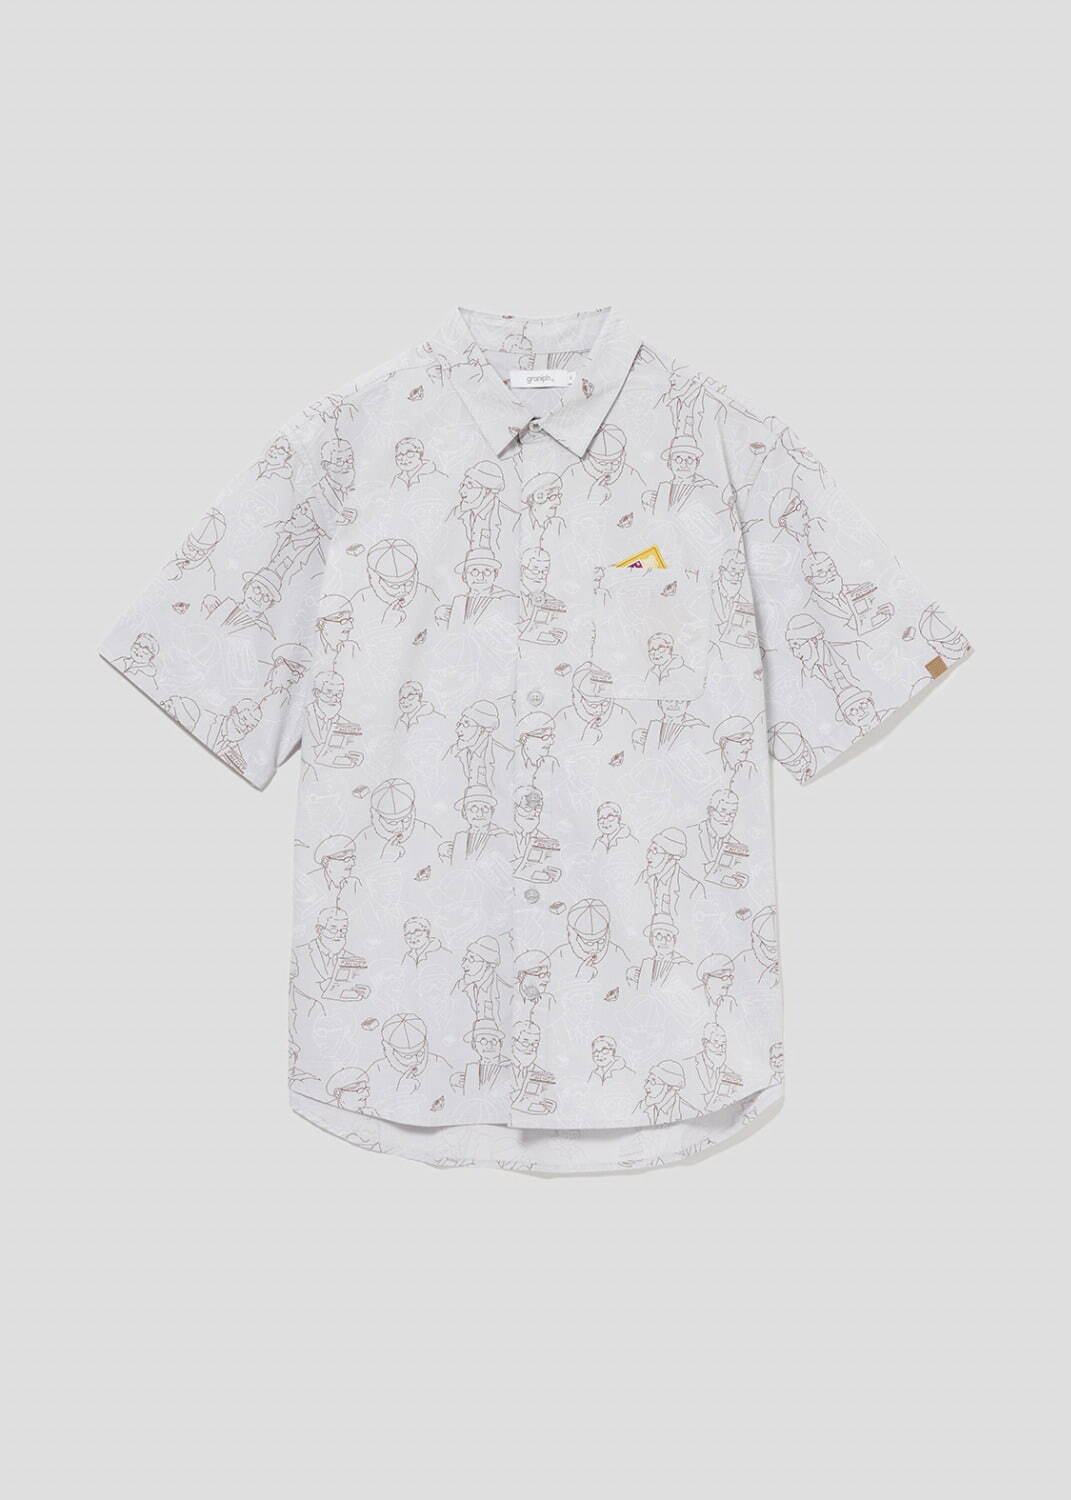 森永ミルクキャラメル×ナイスミドル(森永製菓)半袖シャツ 6,900円